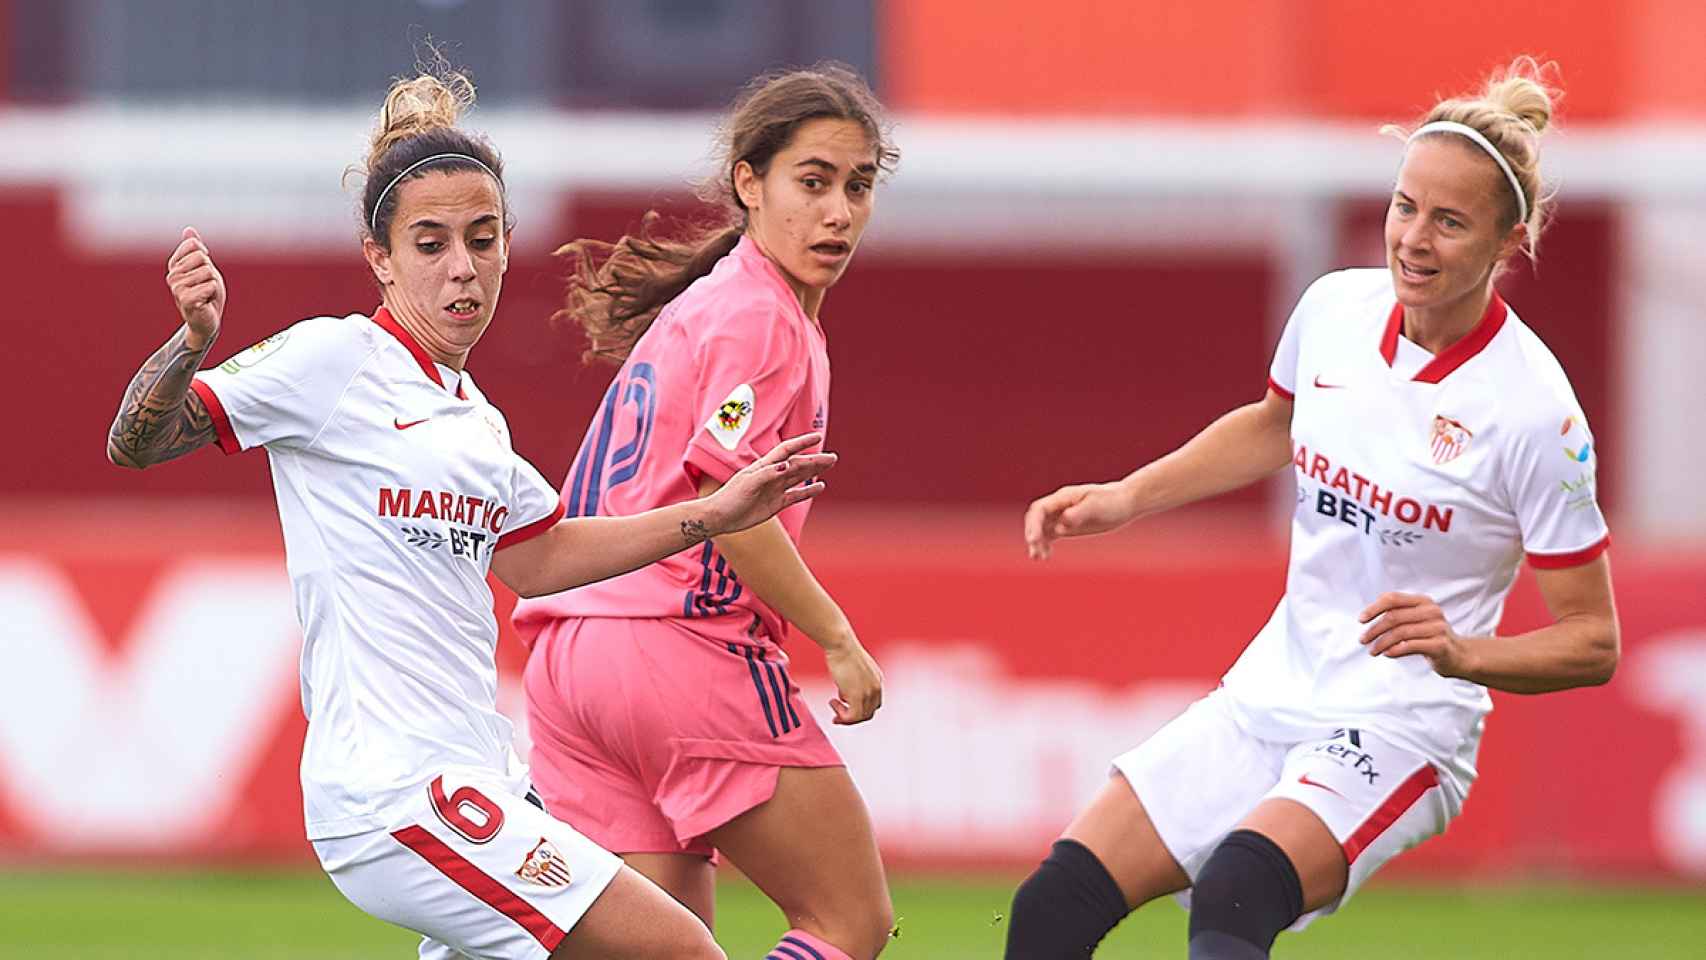 Lorena Navarro en el partido entre el Sevilla y el Real Madrid Femenino